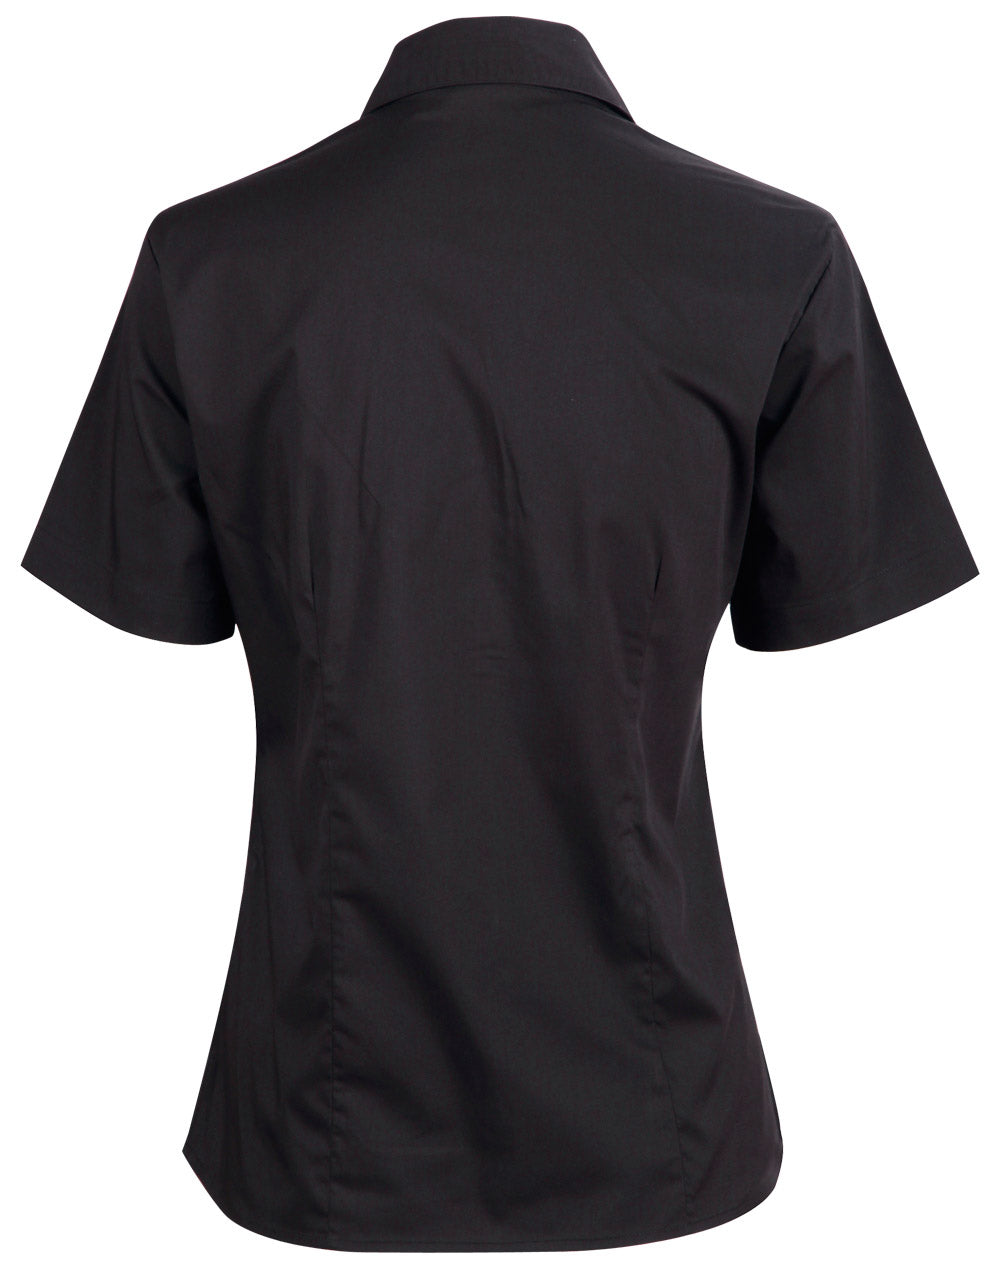 Winning Spirit Women's Teflon Executive Short Sleeve Shirt-(BS07S)